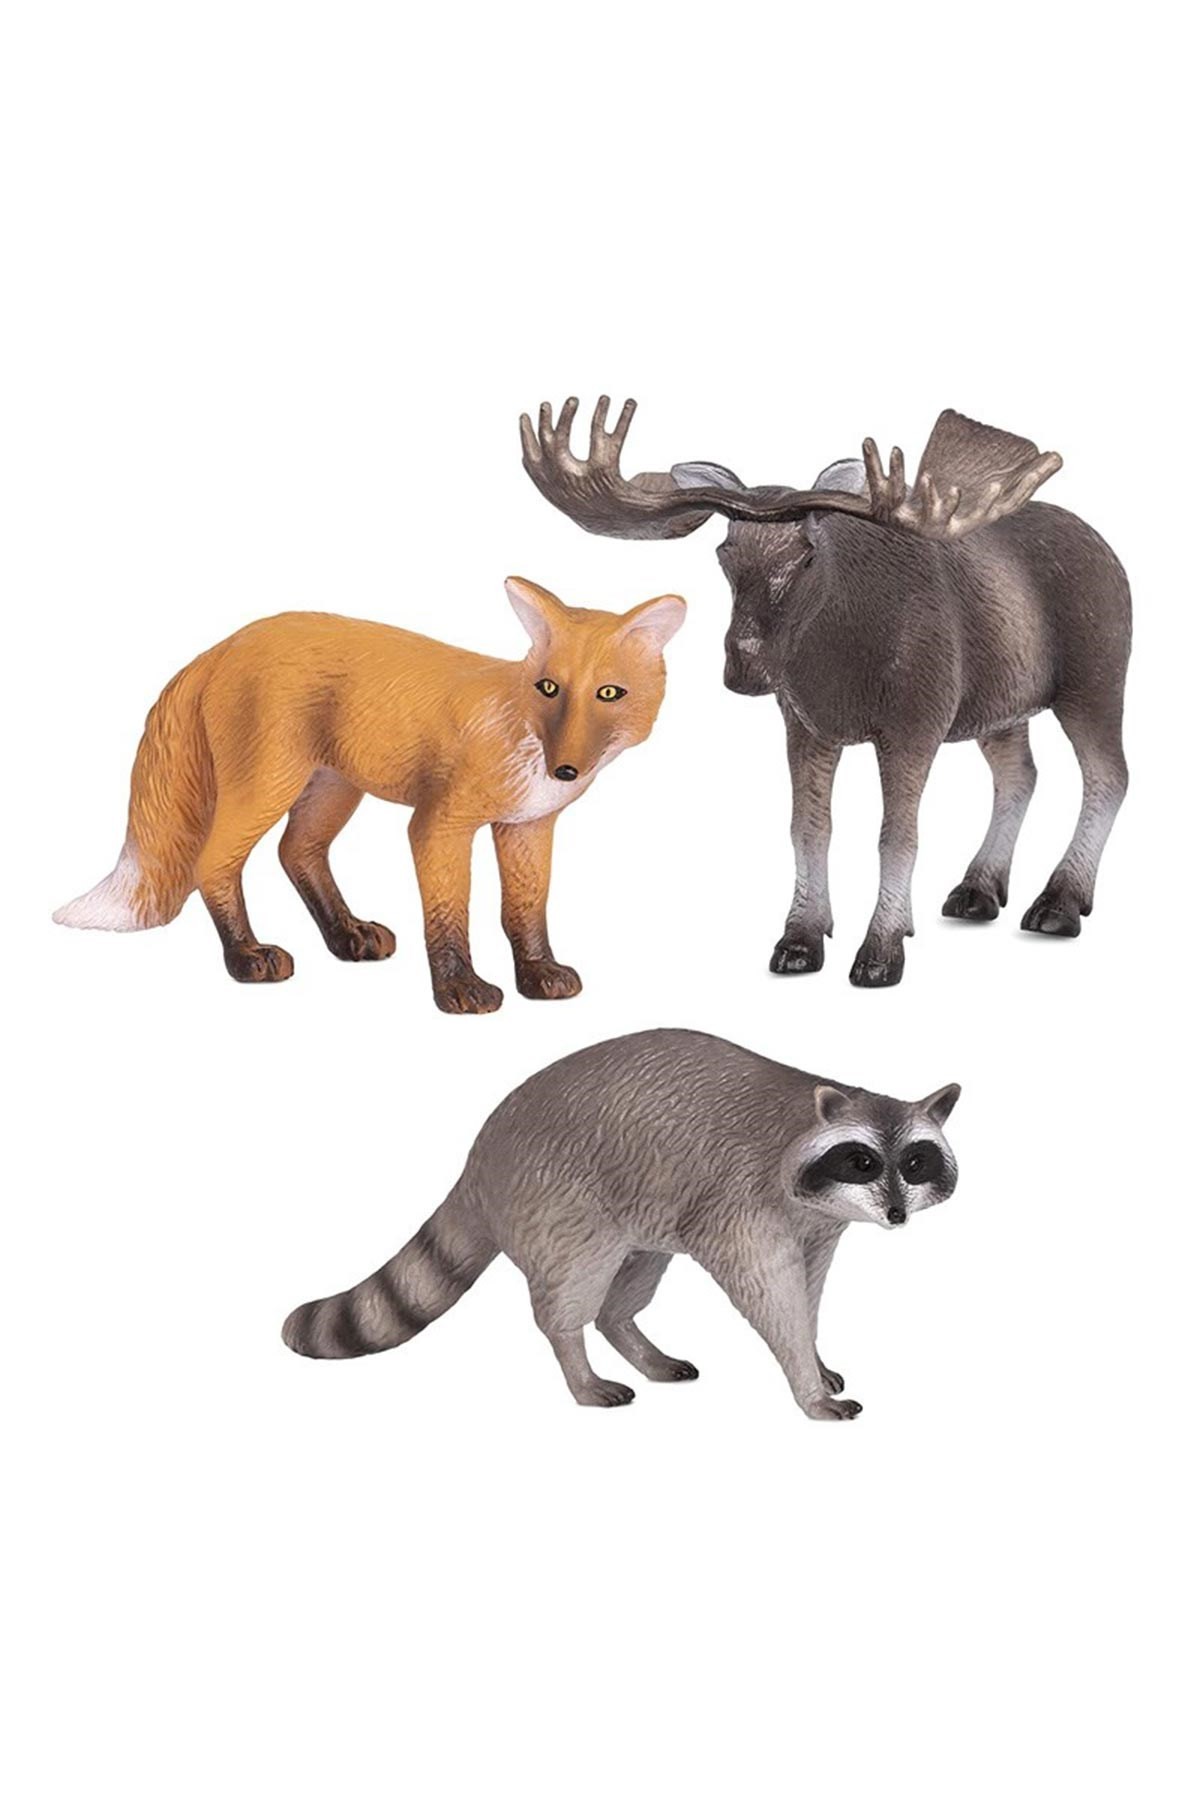 Terra Orman Hayvanları 3'lü Set Tilki, Geyik ve Rakun